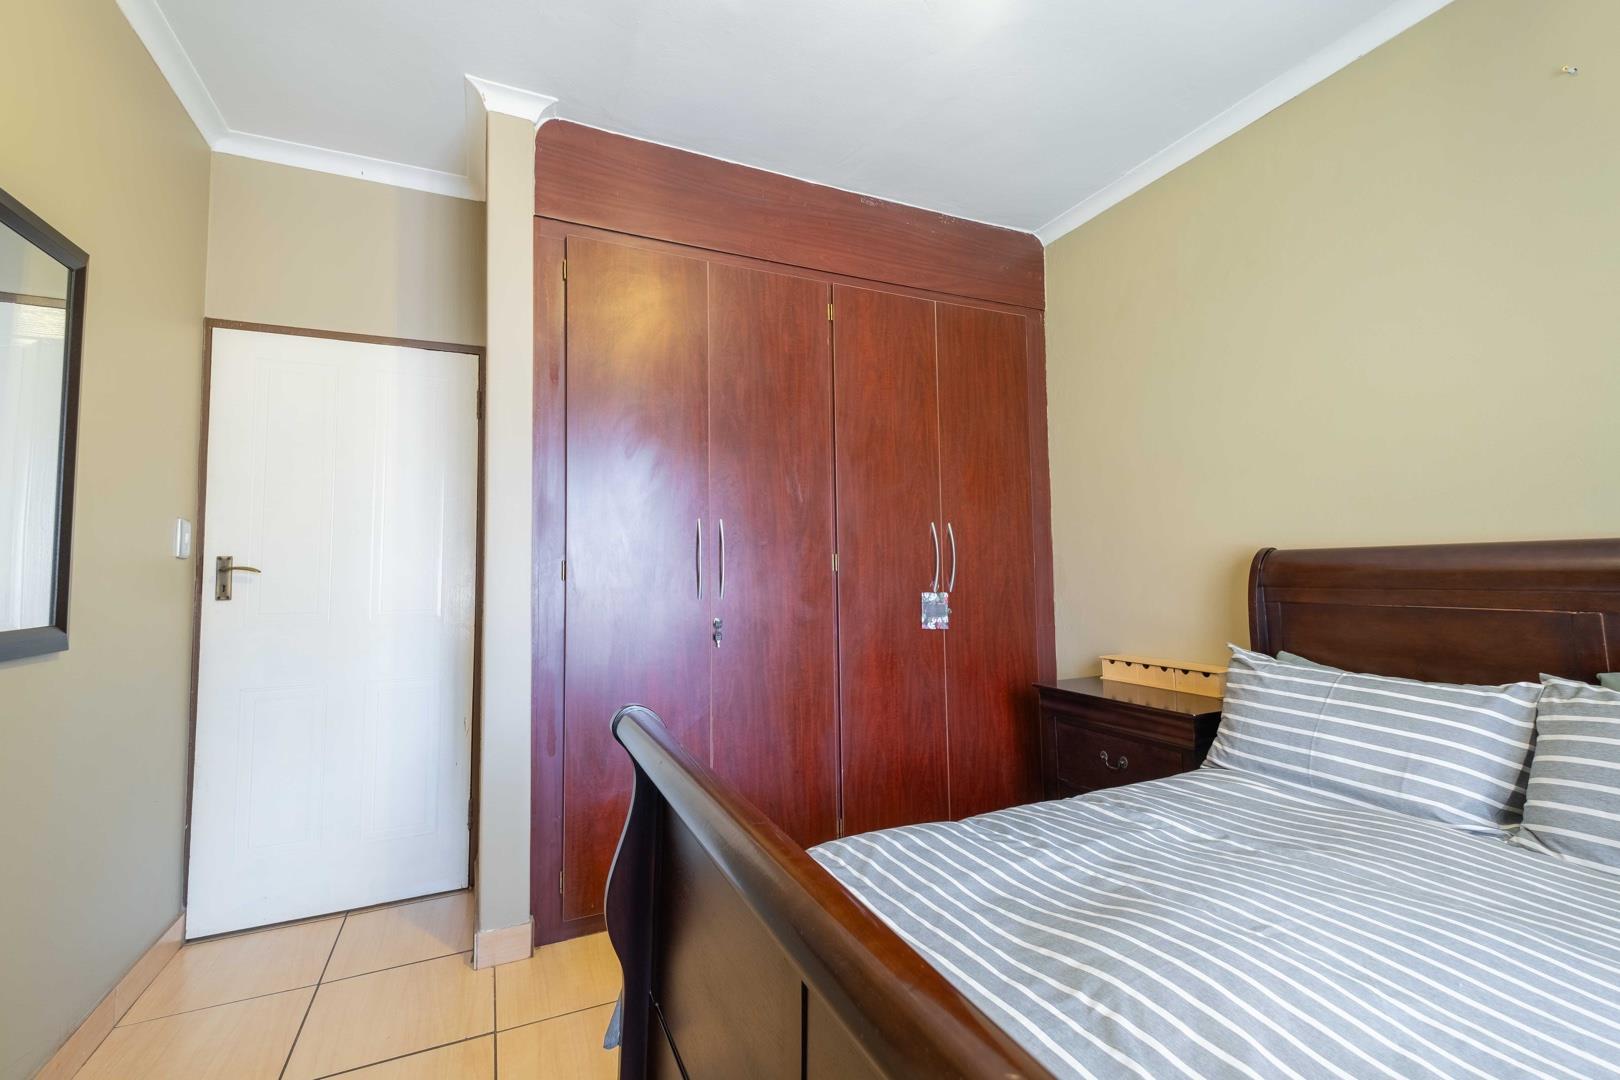 3 Bedroom Property for Sale in Pierre Van Ryneveld Gauteng